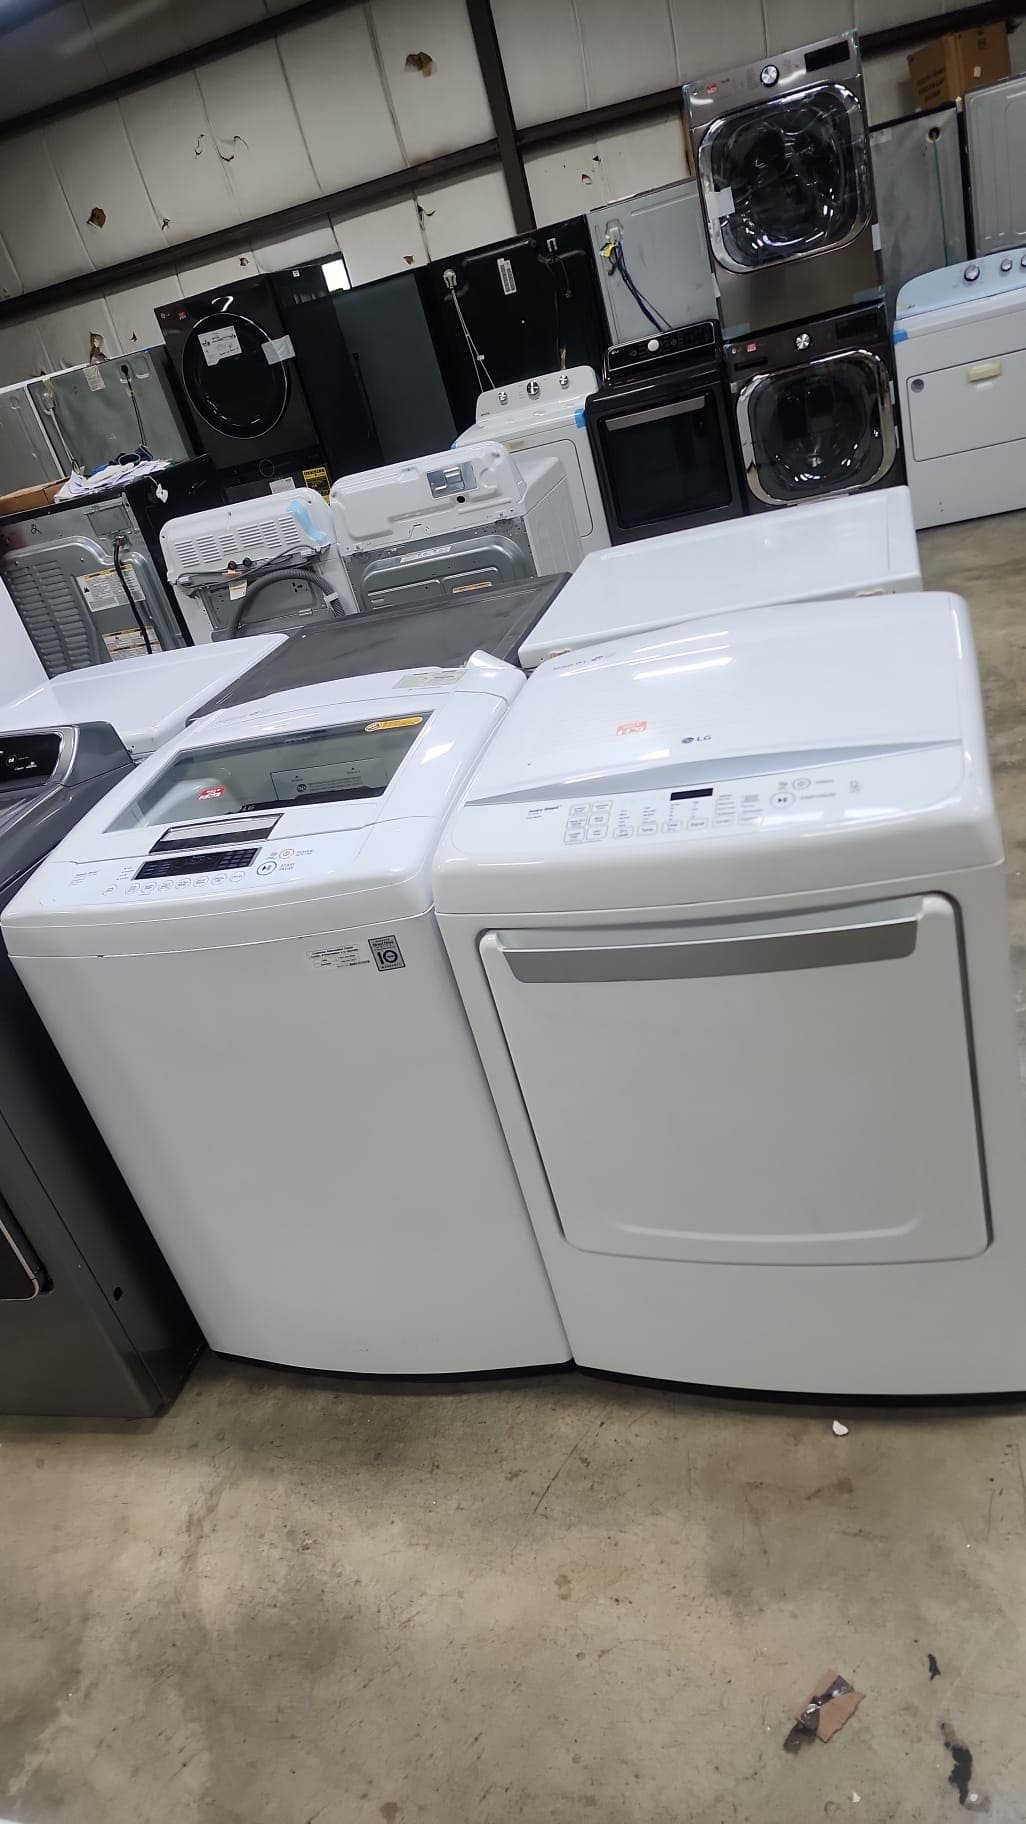 LG Used Washer Dryer Set – White